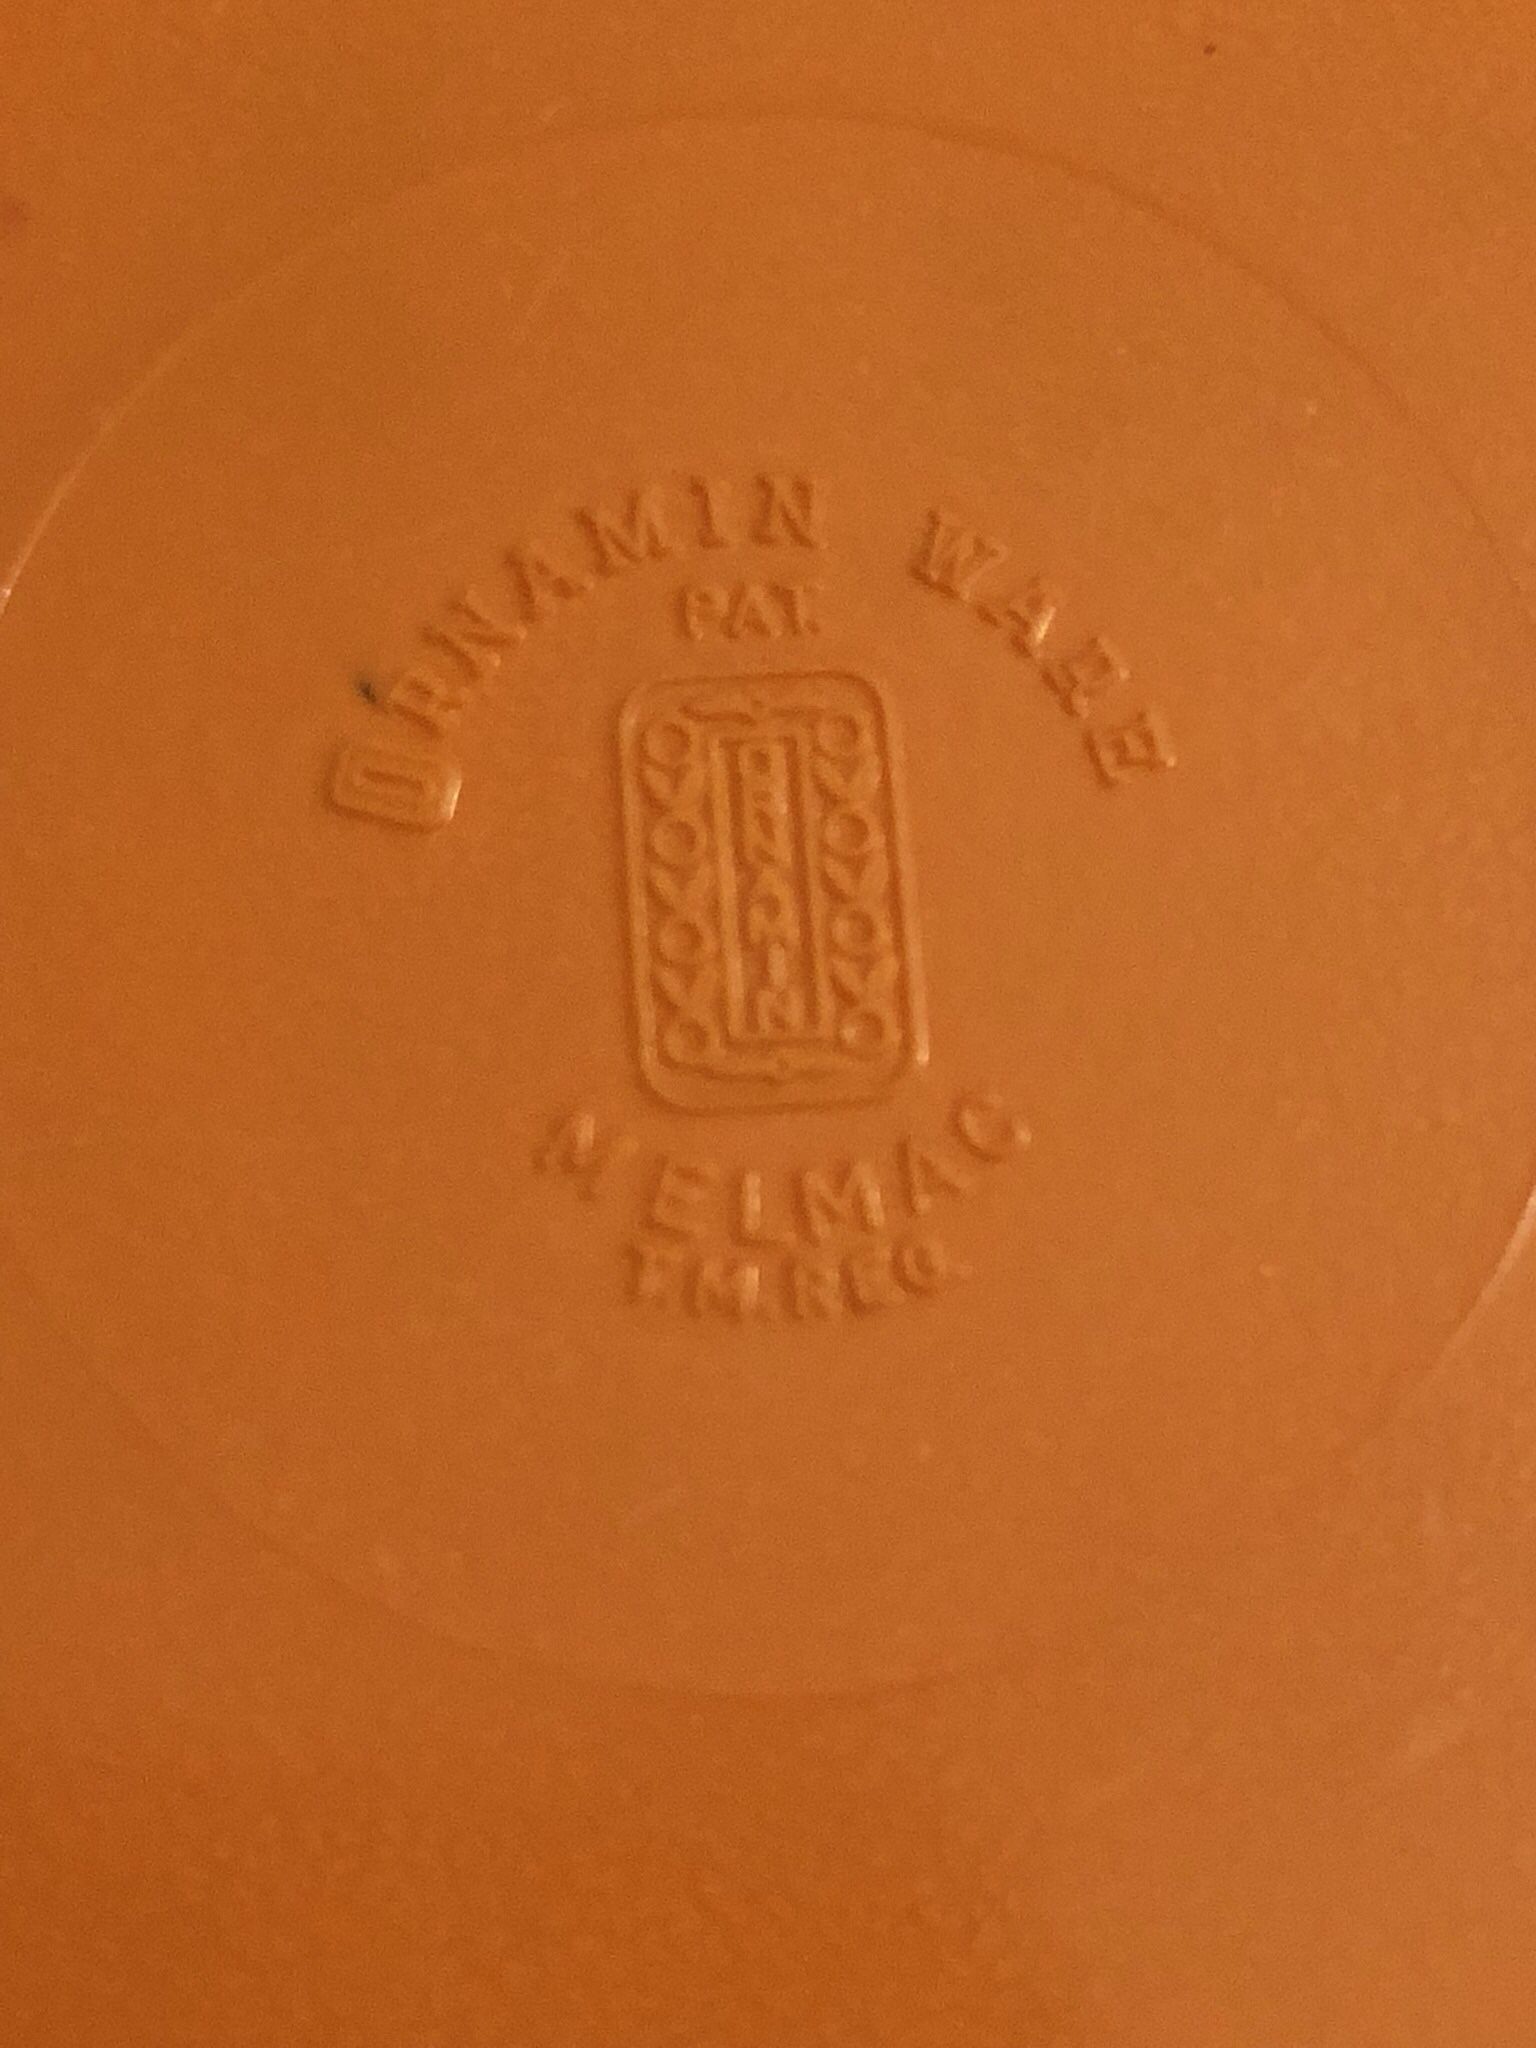 Vintage Ornamin Ware Malmac Orange Bowls Melamine Set Of 4